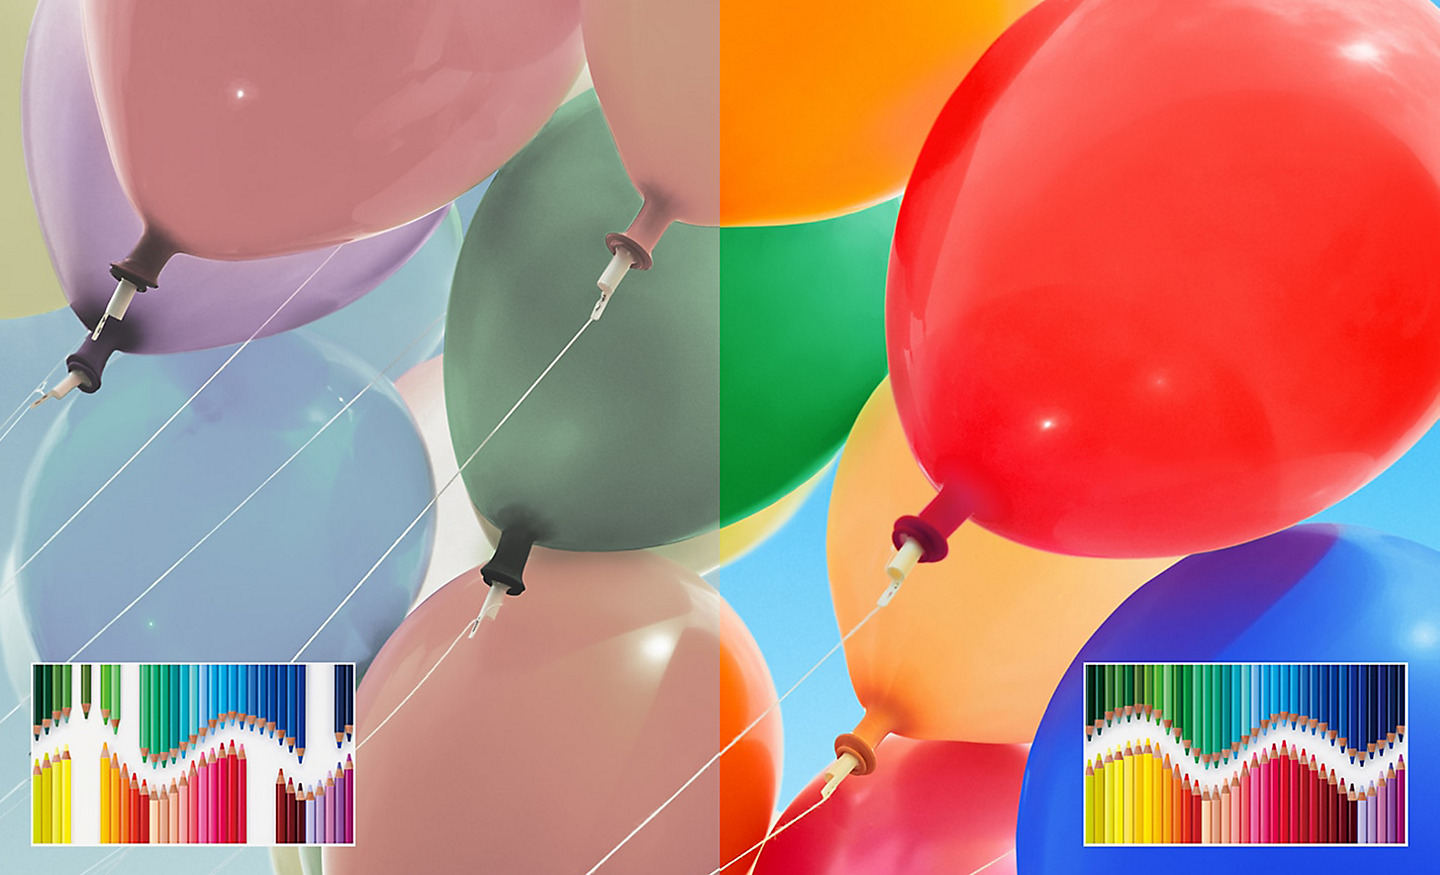 Imagen en pantalla dividida de globos coloridos en la que se muestra un mayor brillo y contraste en la parte derecha